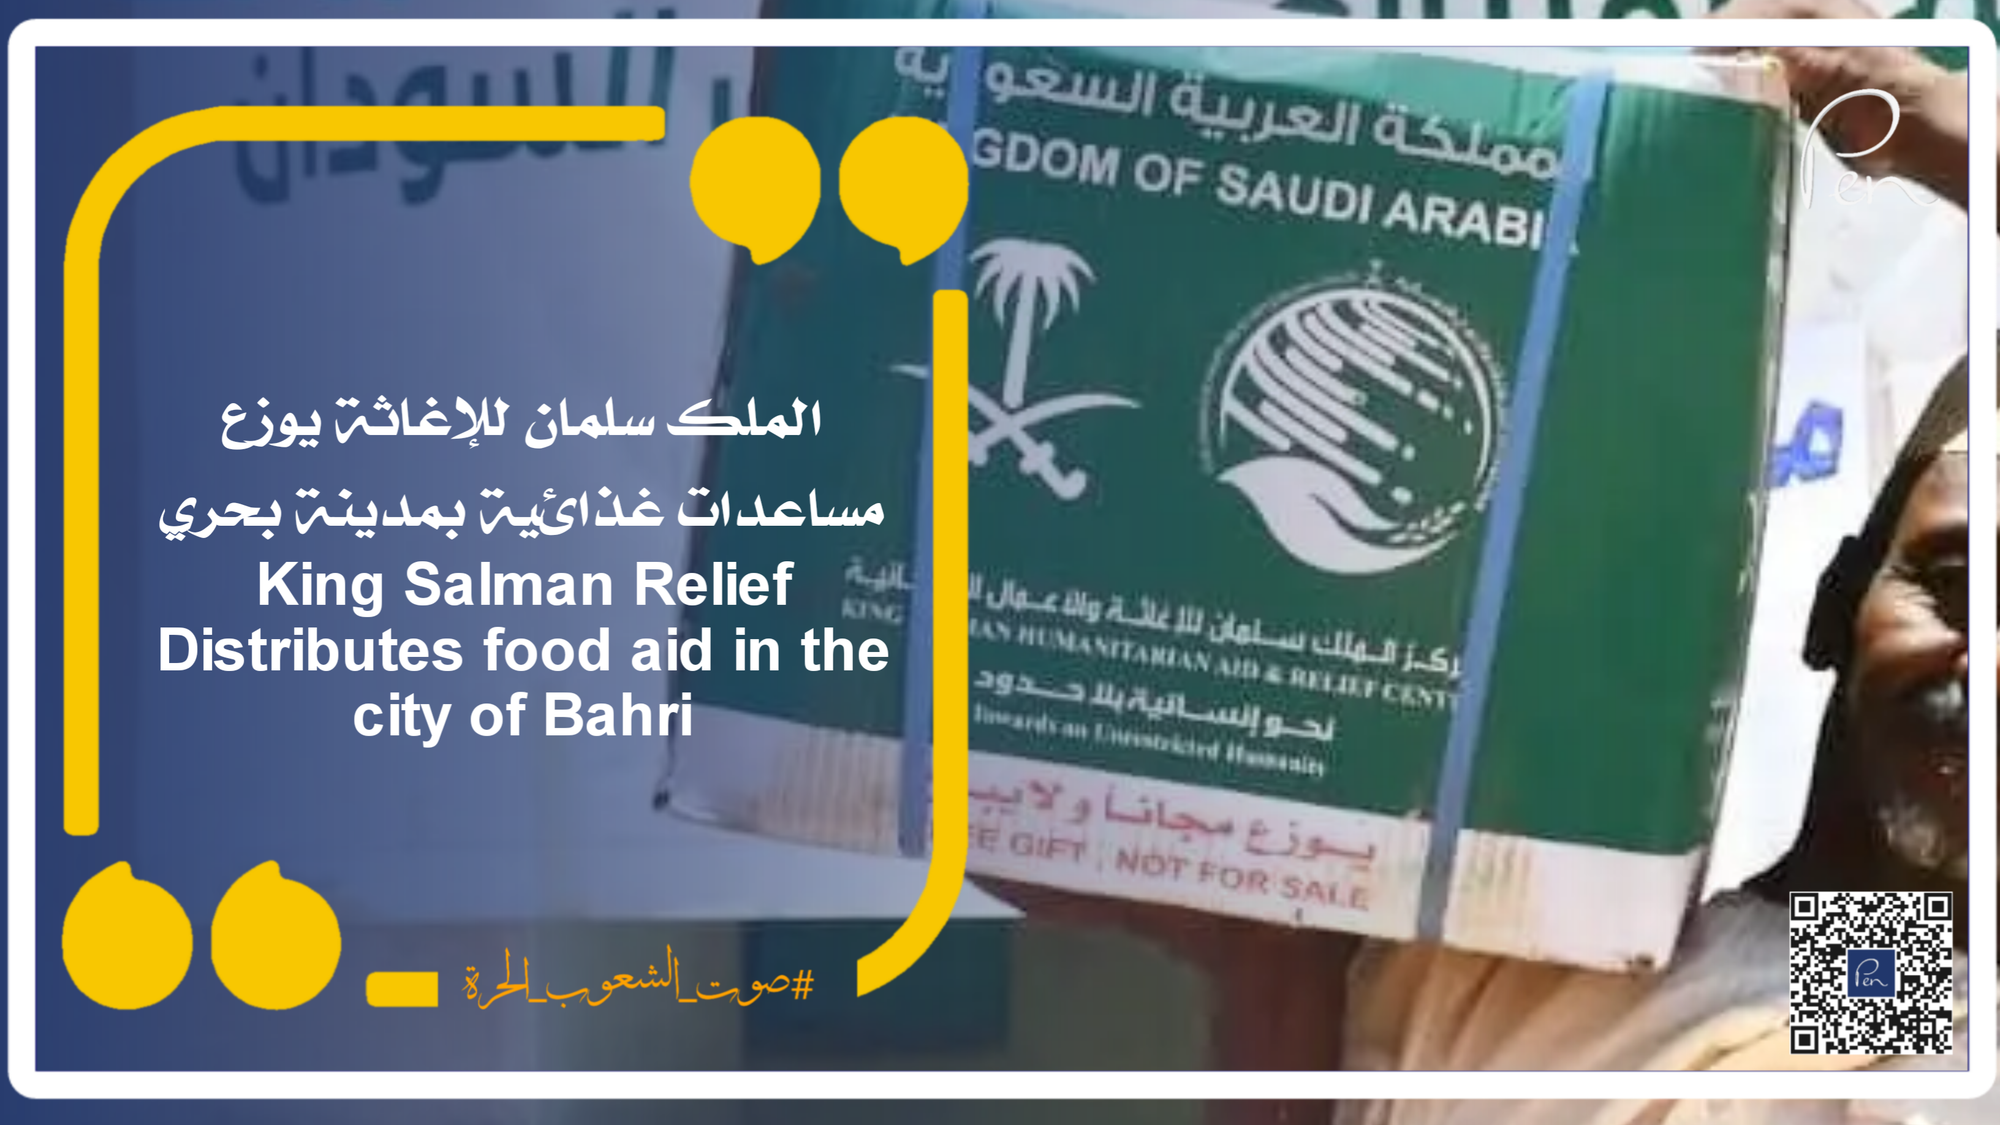 الملك سلمان للإغاثة يوزع مساعدات غذائية بمدينة بحري